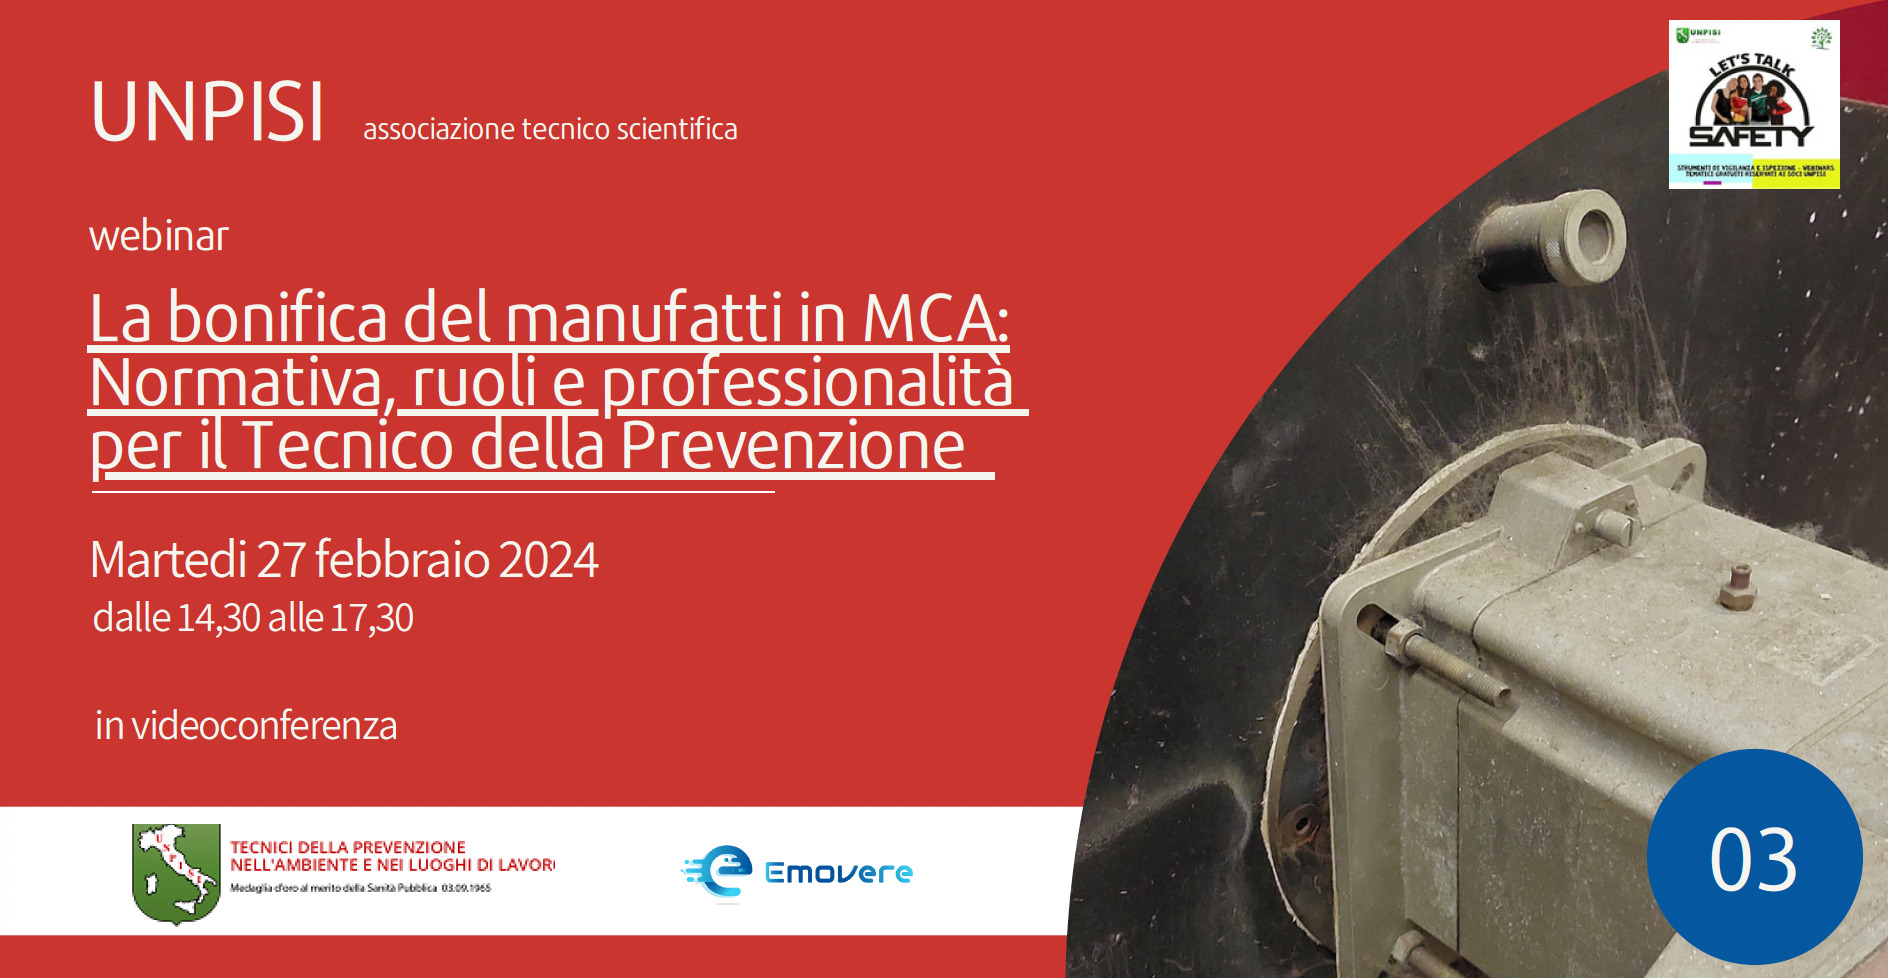 Webinar “La bonifica del manufatti in MCA: Normativa, ruoli e professionalità per il Tecnico della Prevenzione”- 27 febbraio 2024